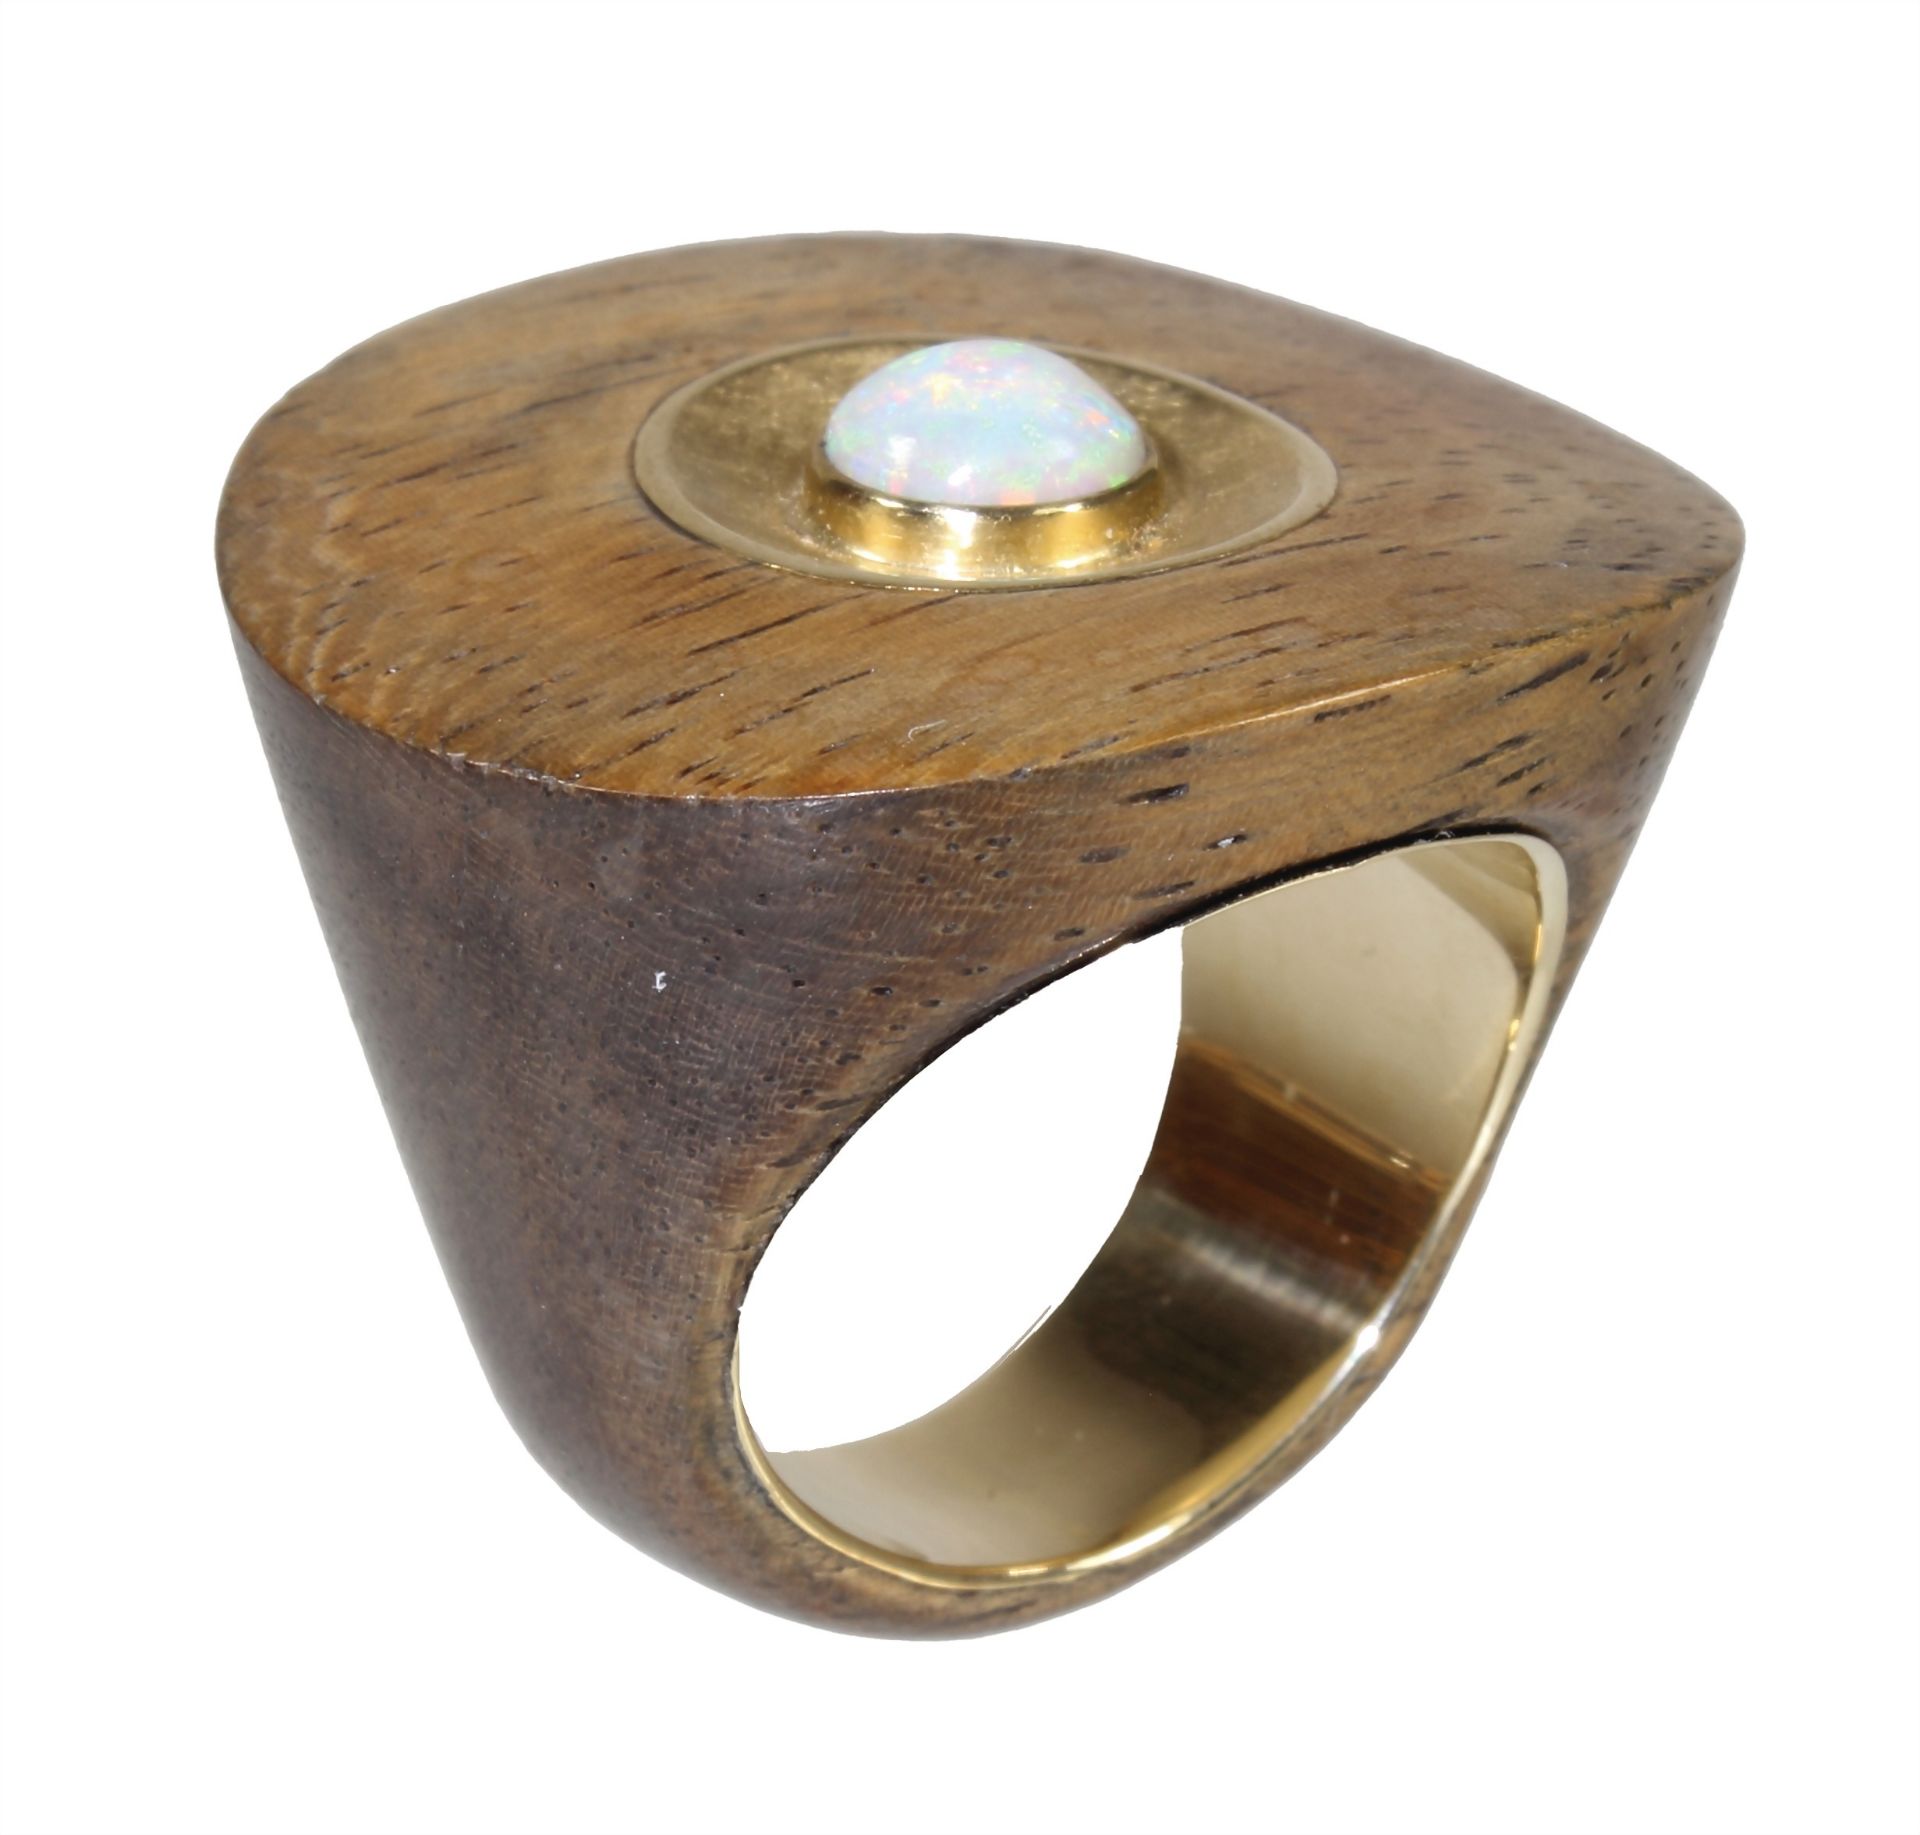 Ring, UNIKAT, GG 750/000, Opal in leuchtenden vorw. grünen Farbtönen, Holzring innen mit Gold ... - Bild 2 aus 2